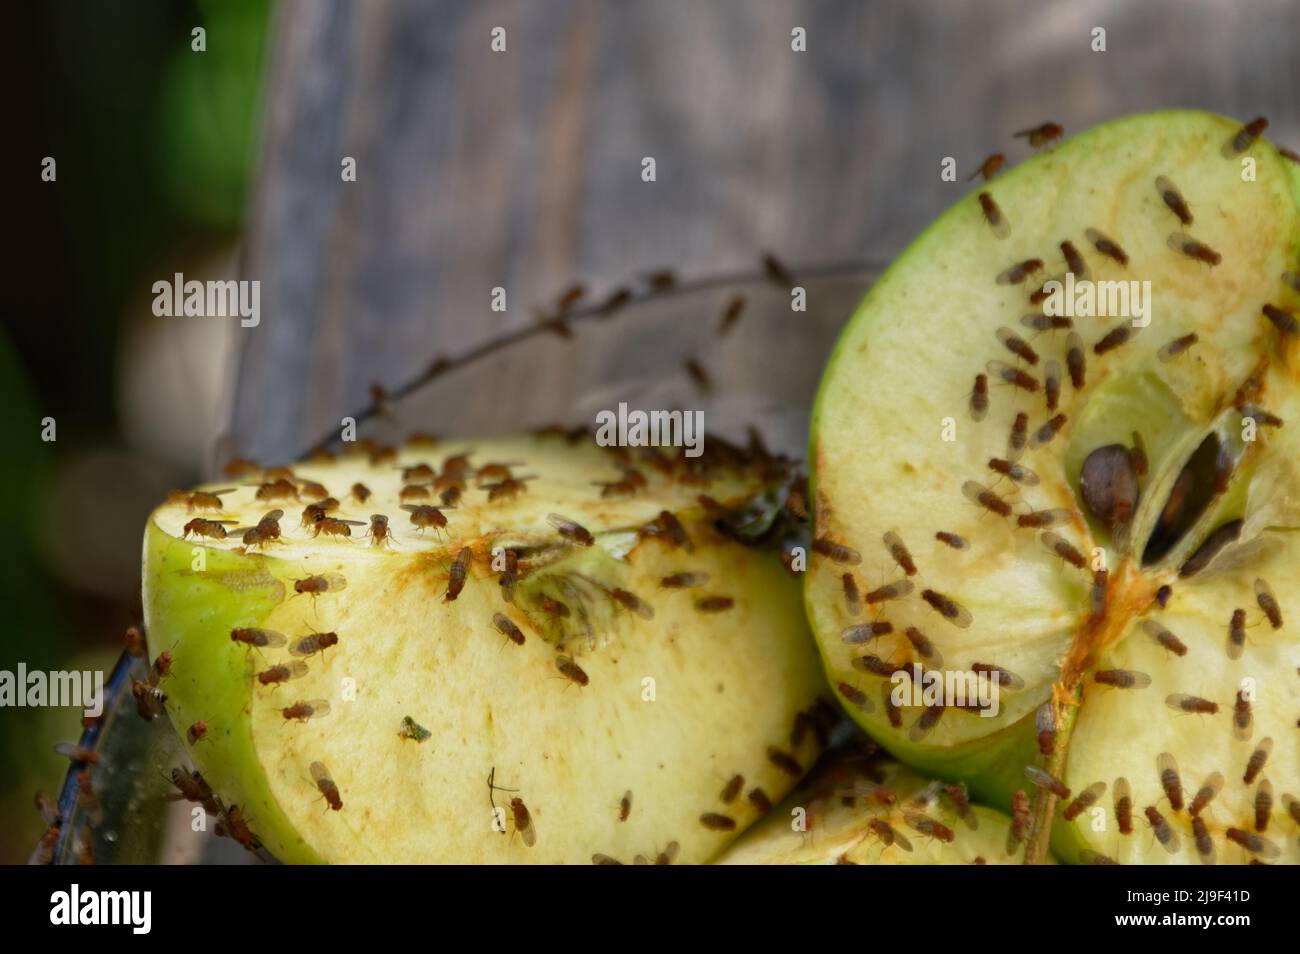 Äpfel, die halbiert wurden, wurden übrig gelassen, um die Fruchtfliegen anzuziehen Stockfoto